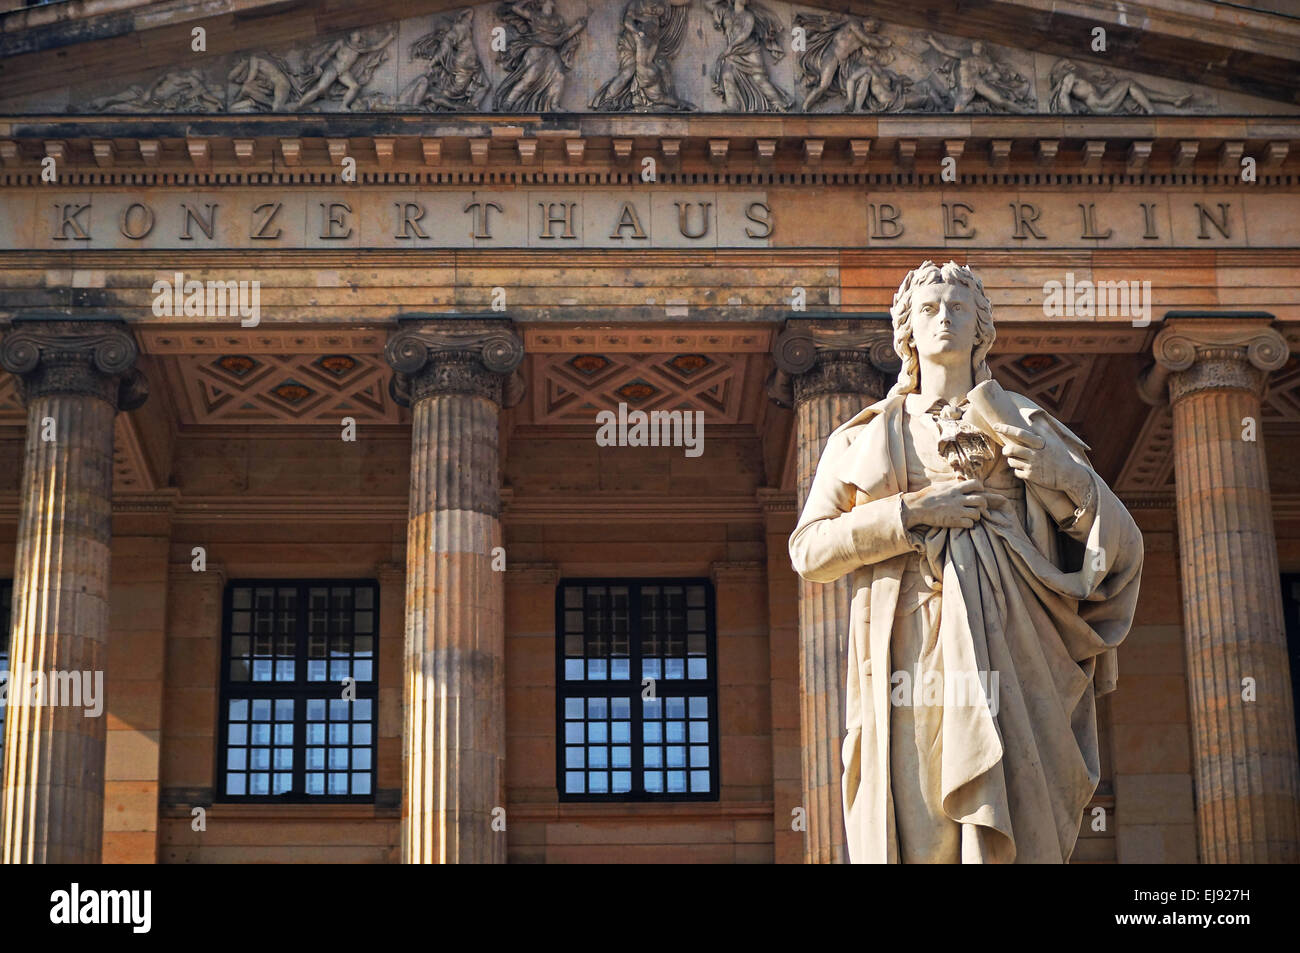 Konzerthaus Berlin Deutschland Stock Photo